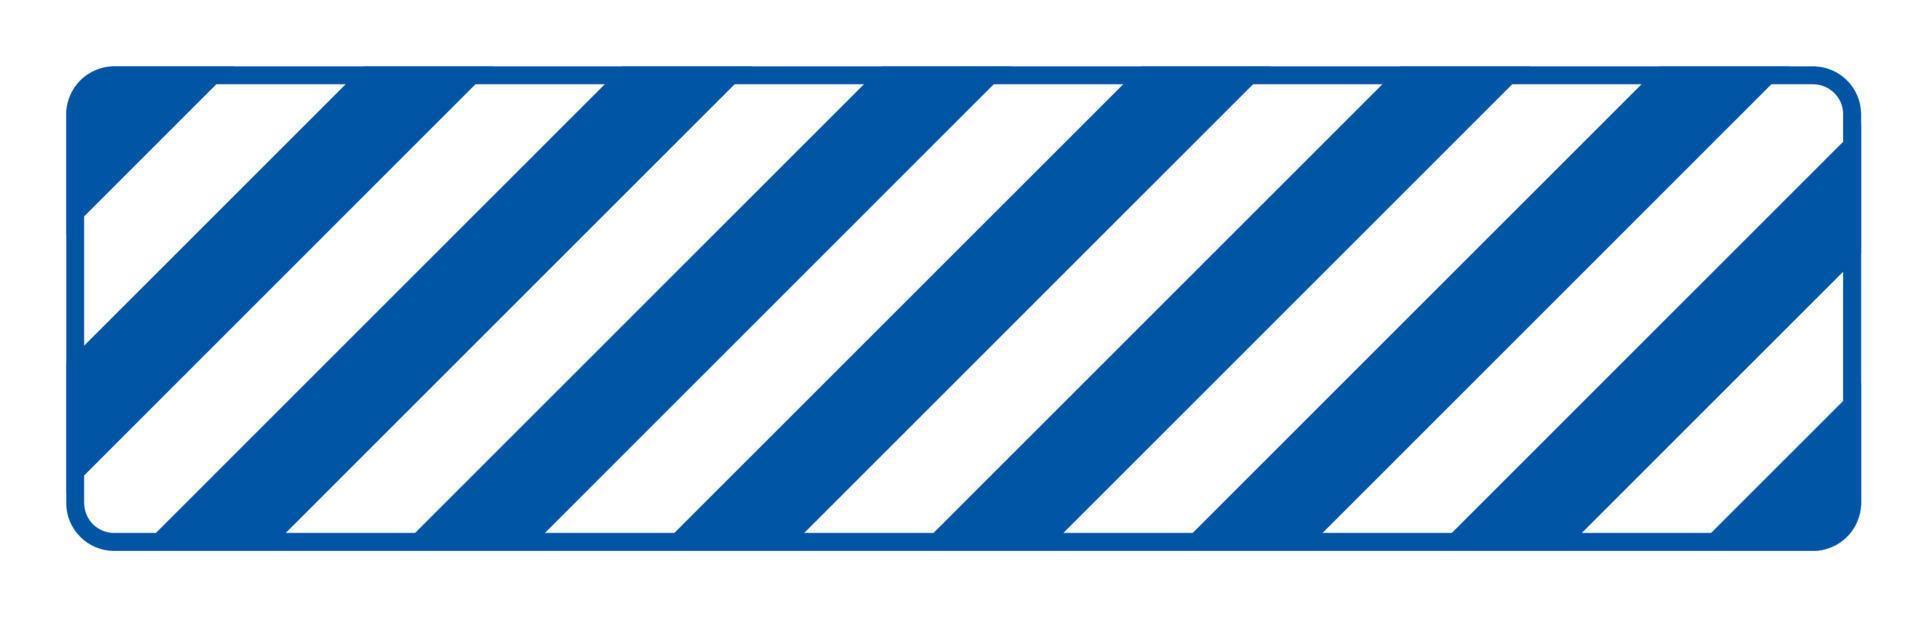 blau-weiß gestreiftes Bodenschild auf weißem Hintergrund vektor